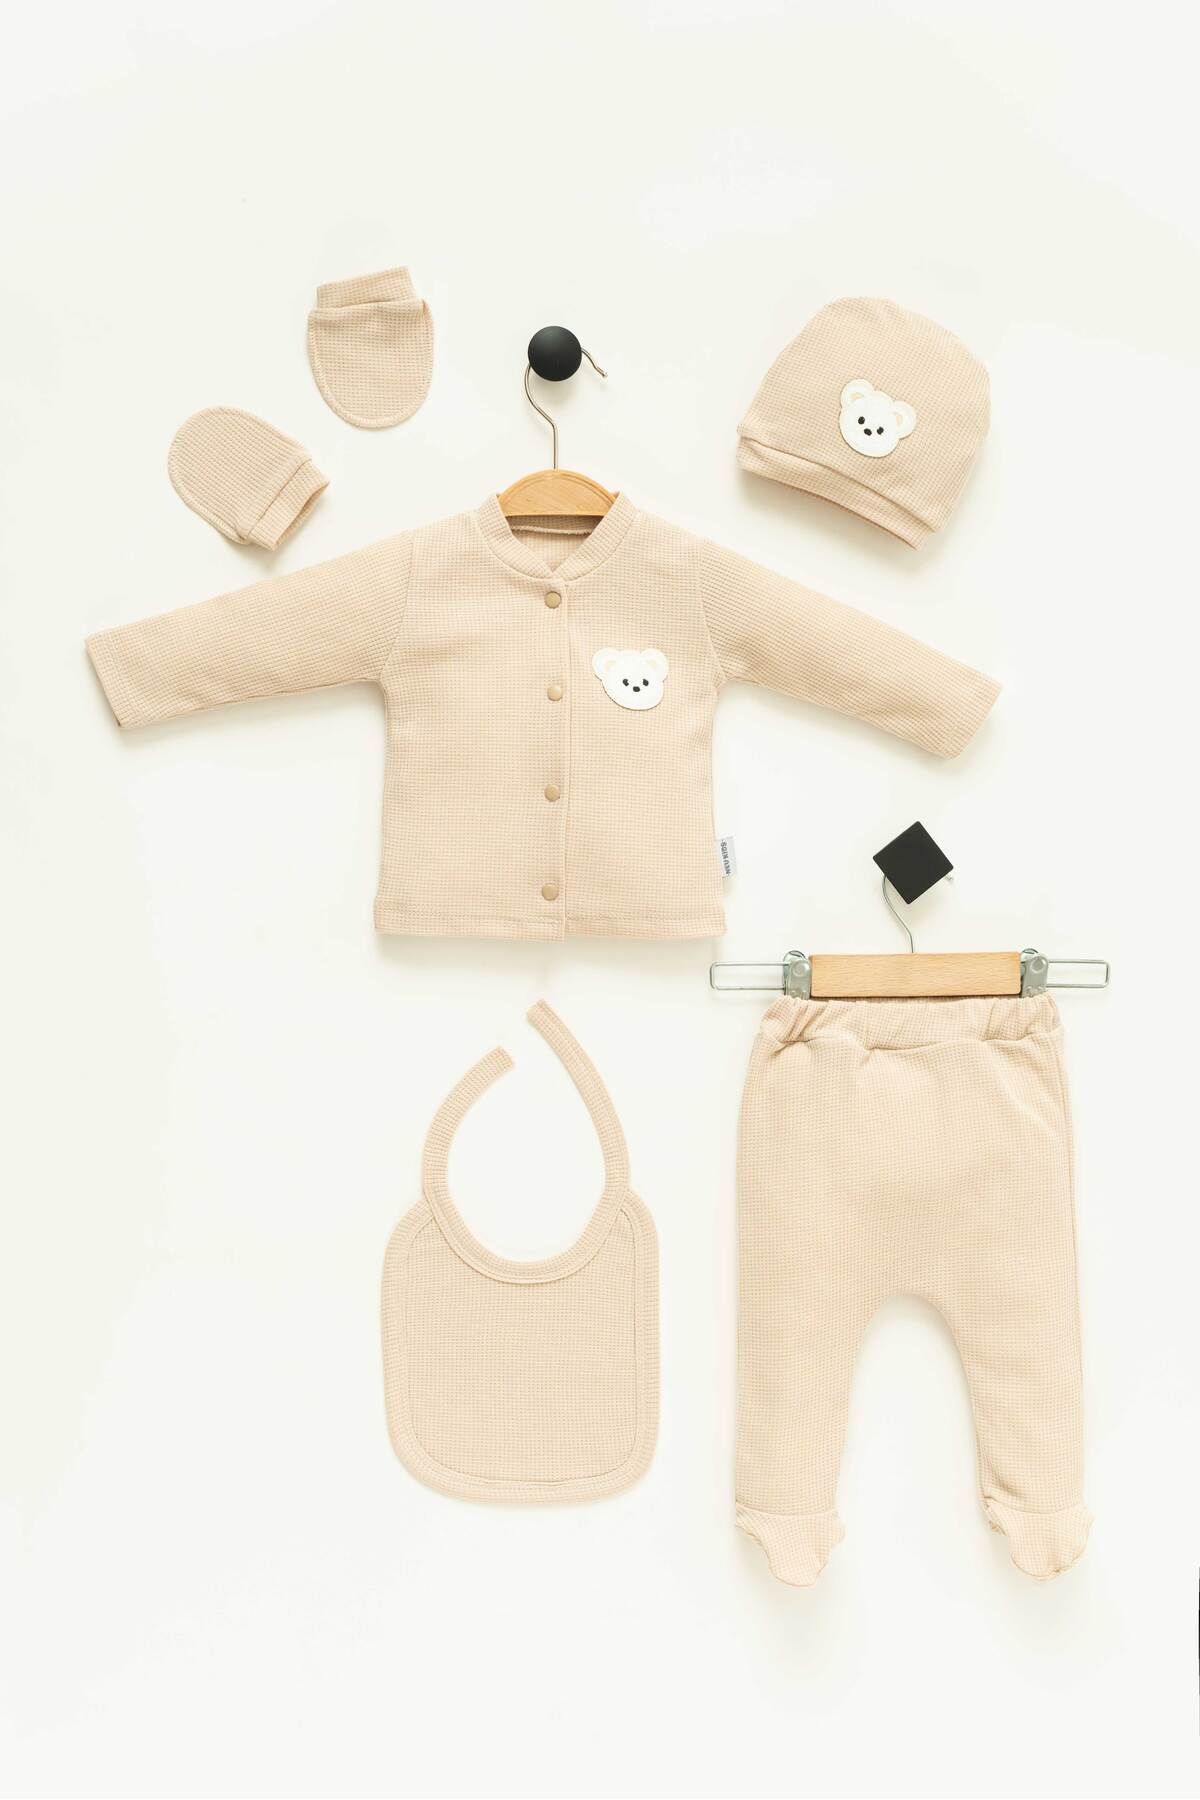 NEU KIDS Hastane Çıkışı 100% Pamuk Ayıcık Süzene Nakışlı Yenidoğan 5li Set Bebek Kıyafeti